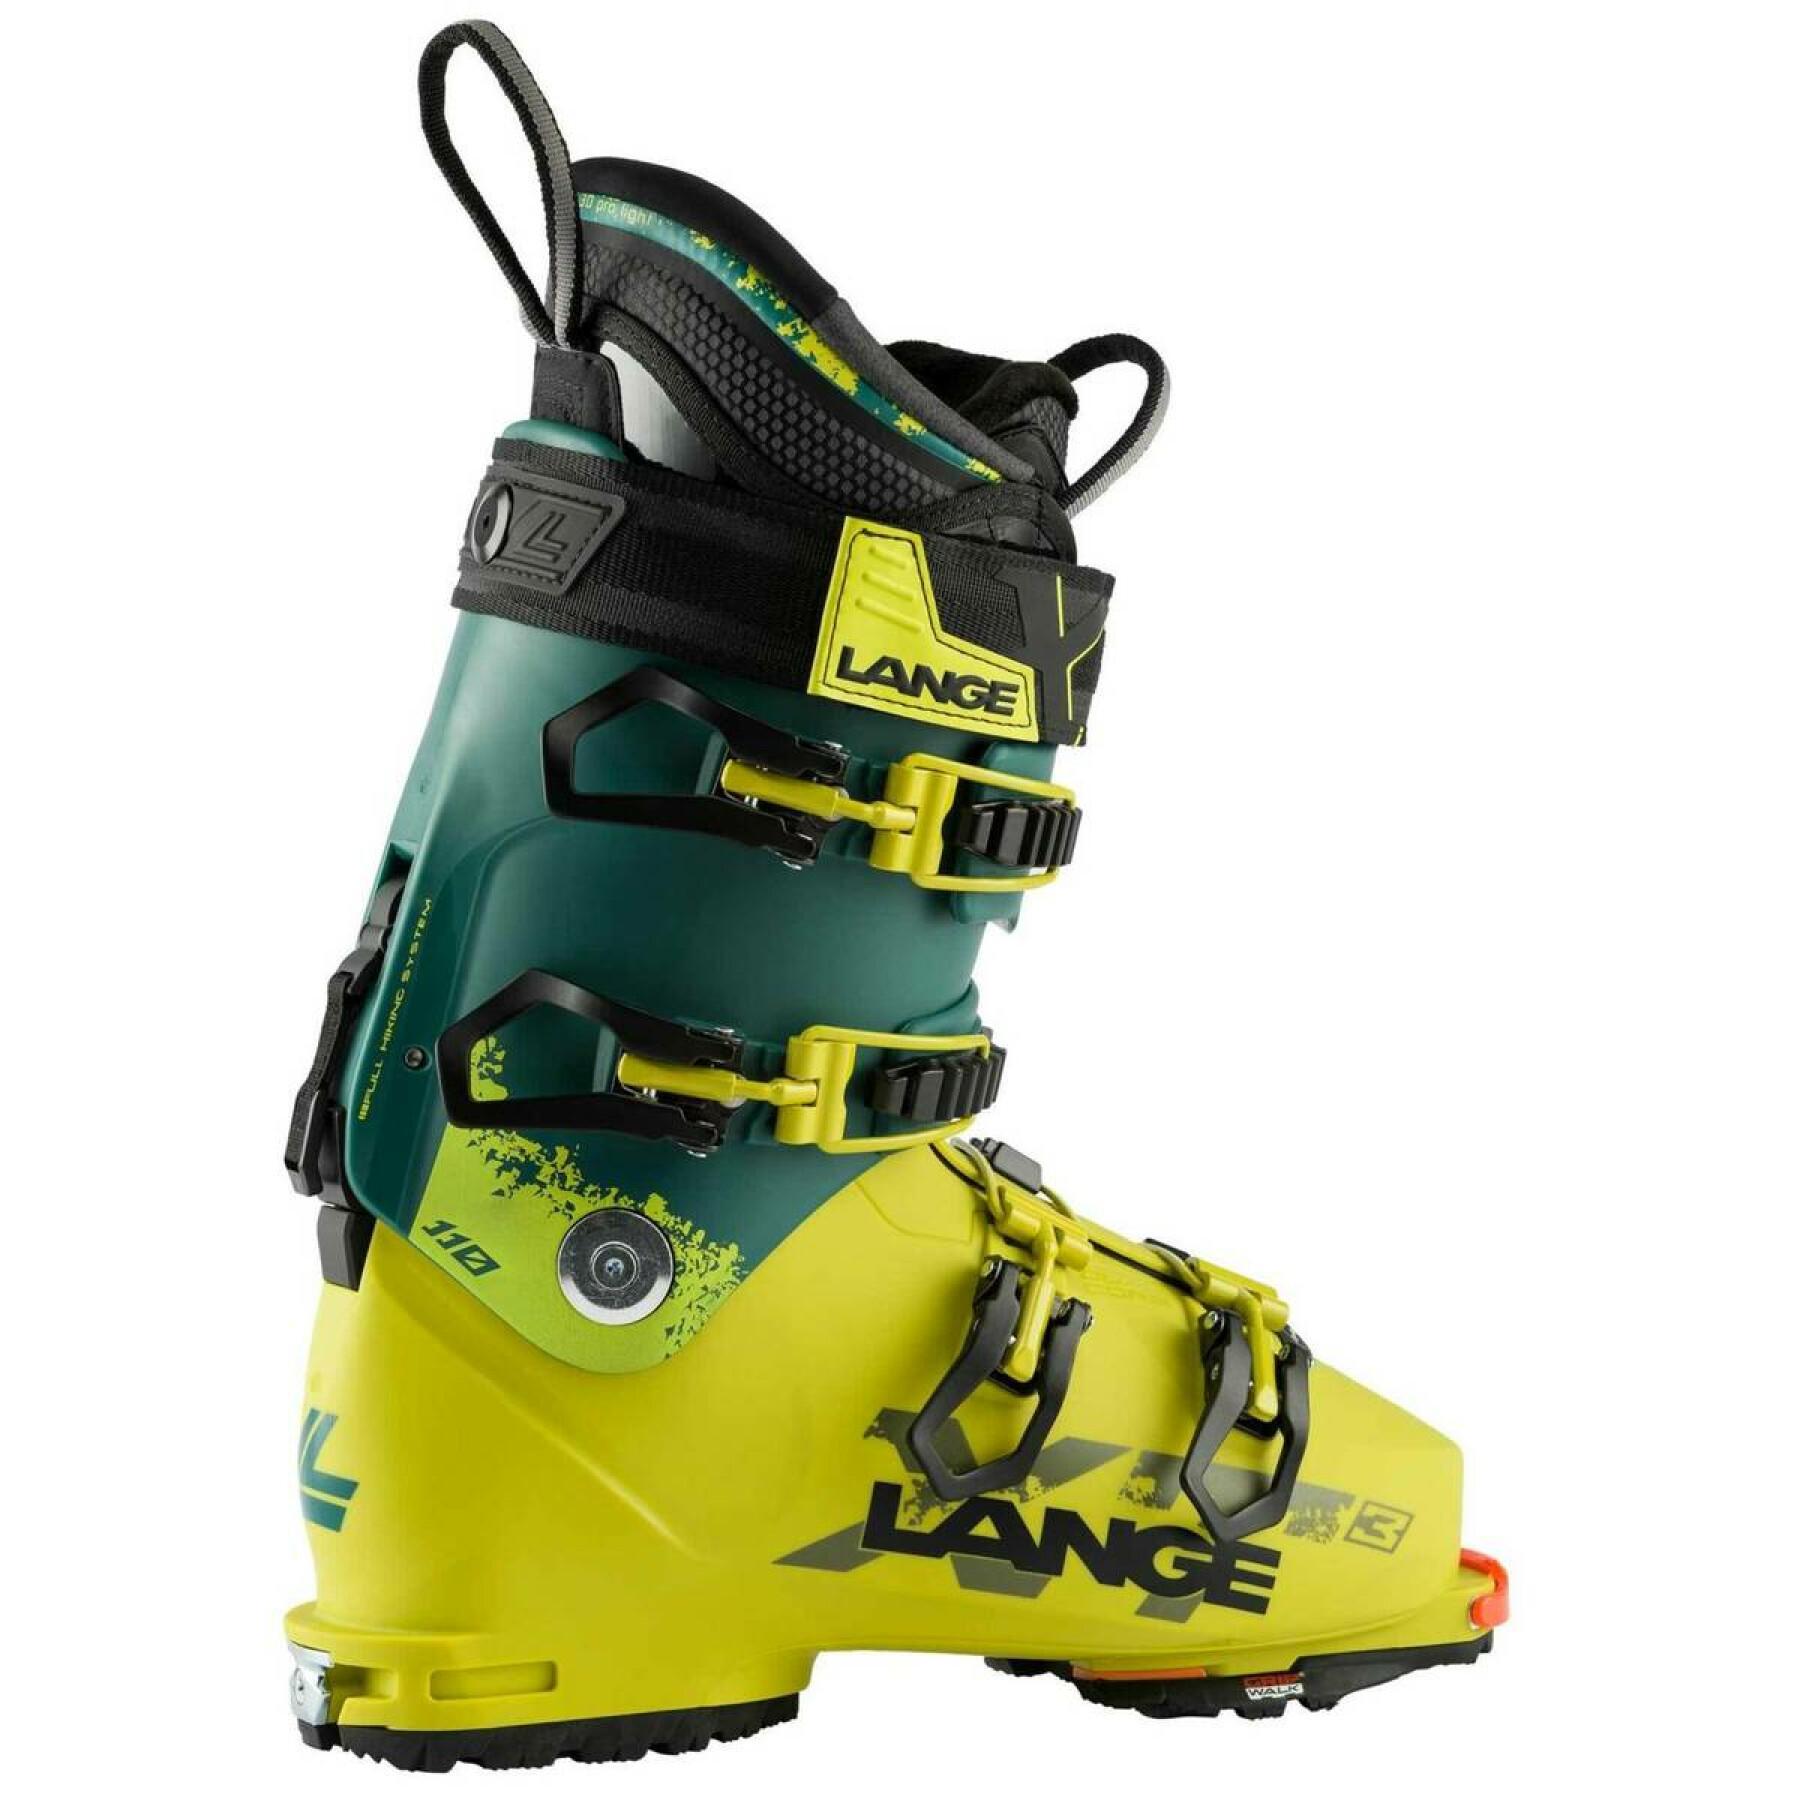 Chaussures de ski Lange xt3 110 gw